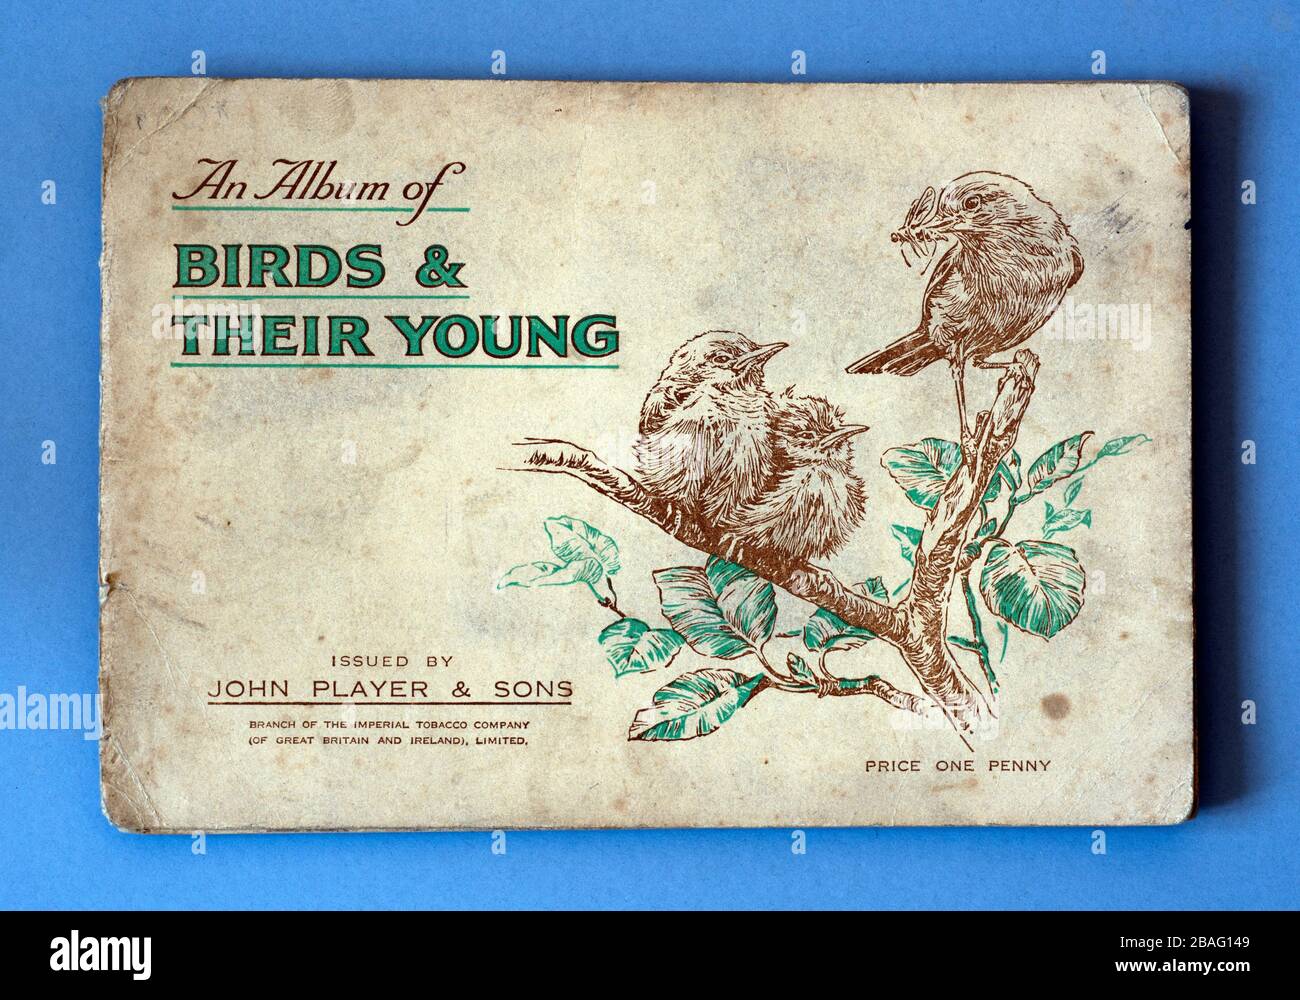 John Player carte de cigarette album couverture, les oiseaux et leurs jeunes Banque D'Images